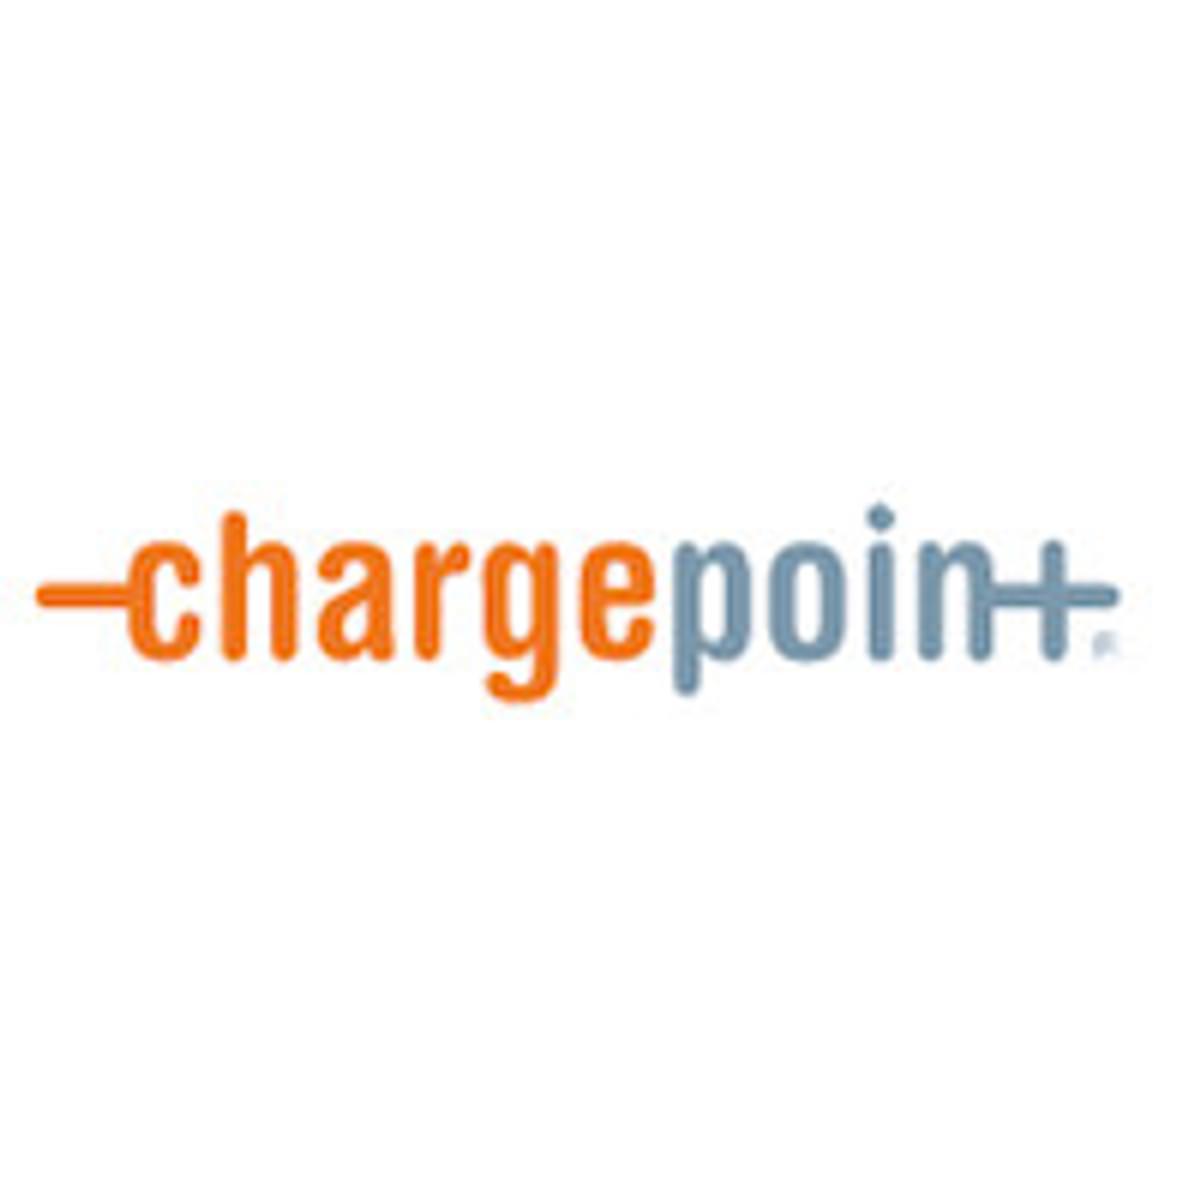 ChargePoint stelt omzetverwachting voor volledig jaar naar boven bij image